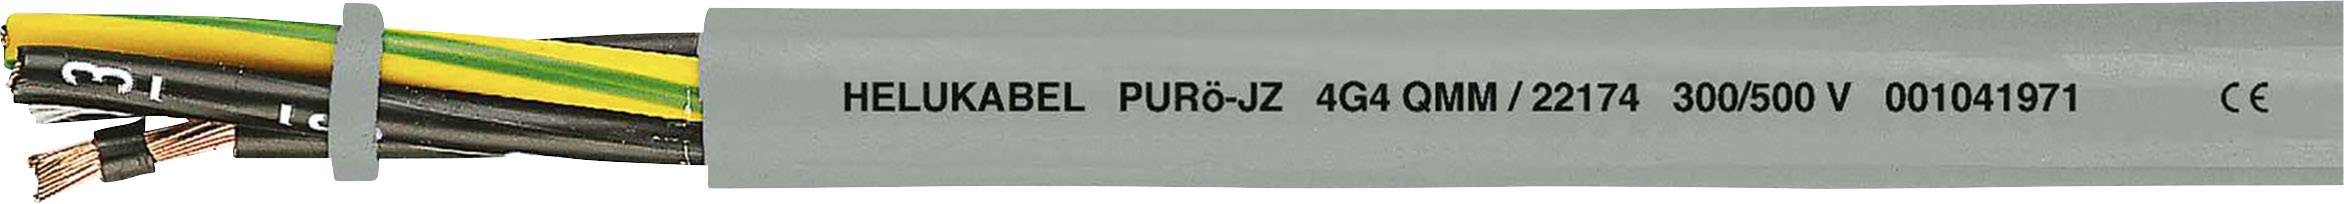 HELUKABEL PURö-JZ Steuerleitung 4 G 1.50 mm² Grau 22150-1000 1000 m